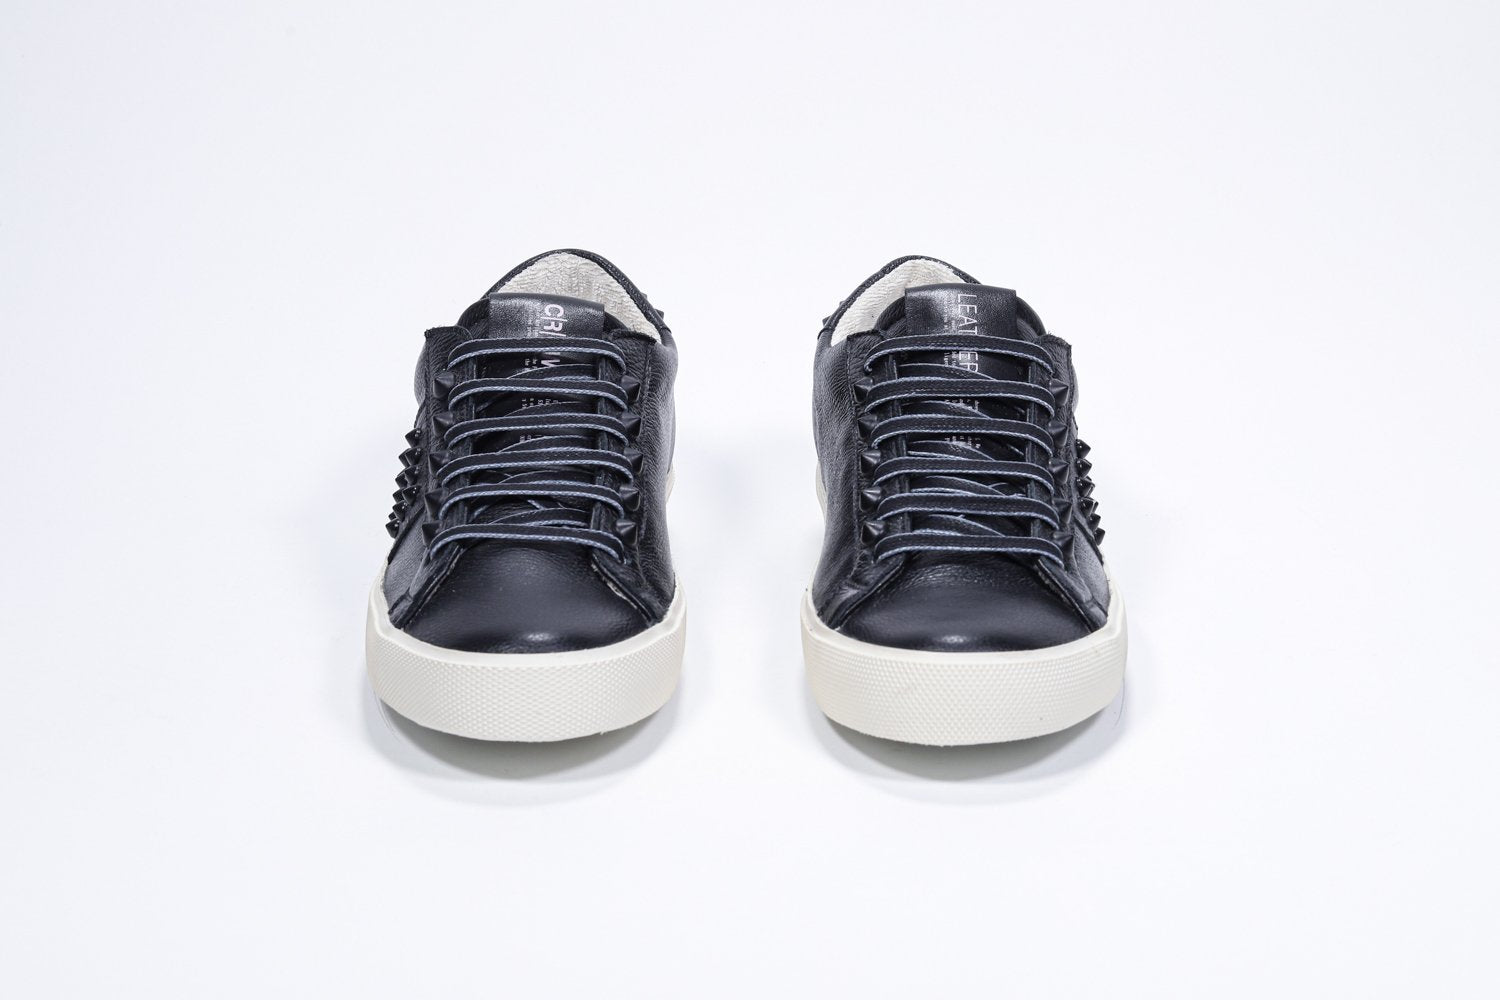 Vue de face de la chaussure noire sneaker. Tige en cuir avec clous et semelle en caoutchouc vintage.